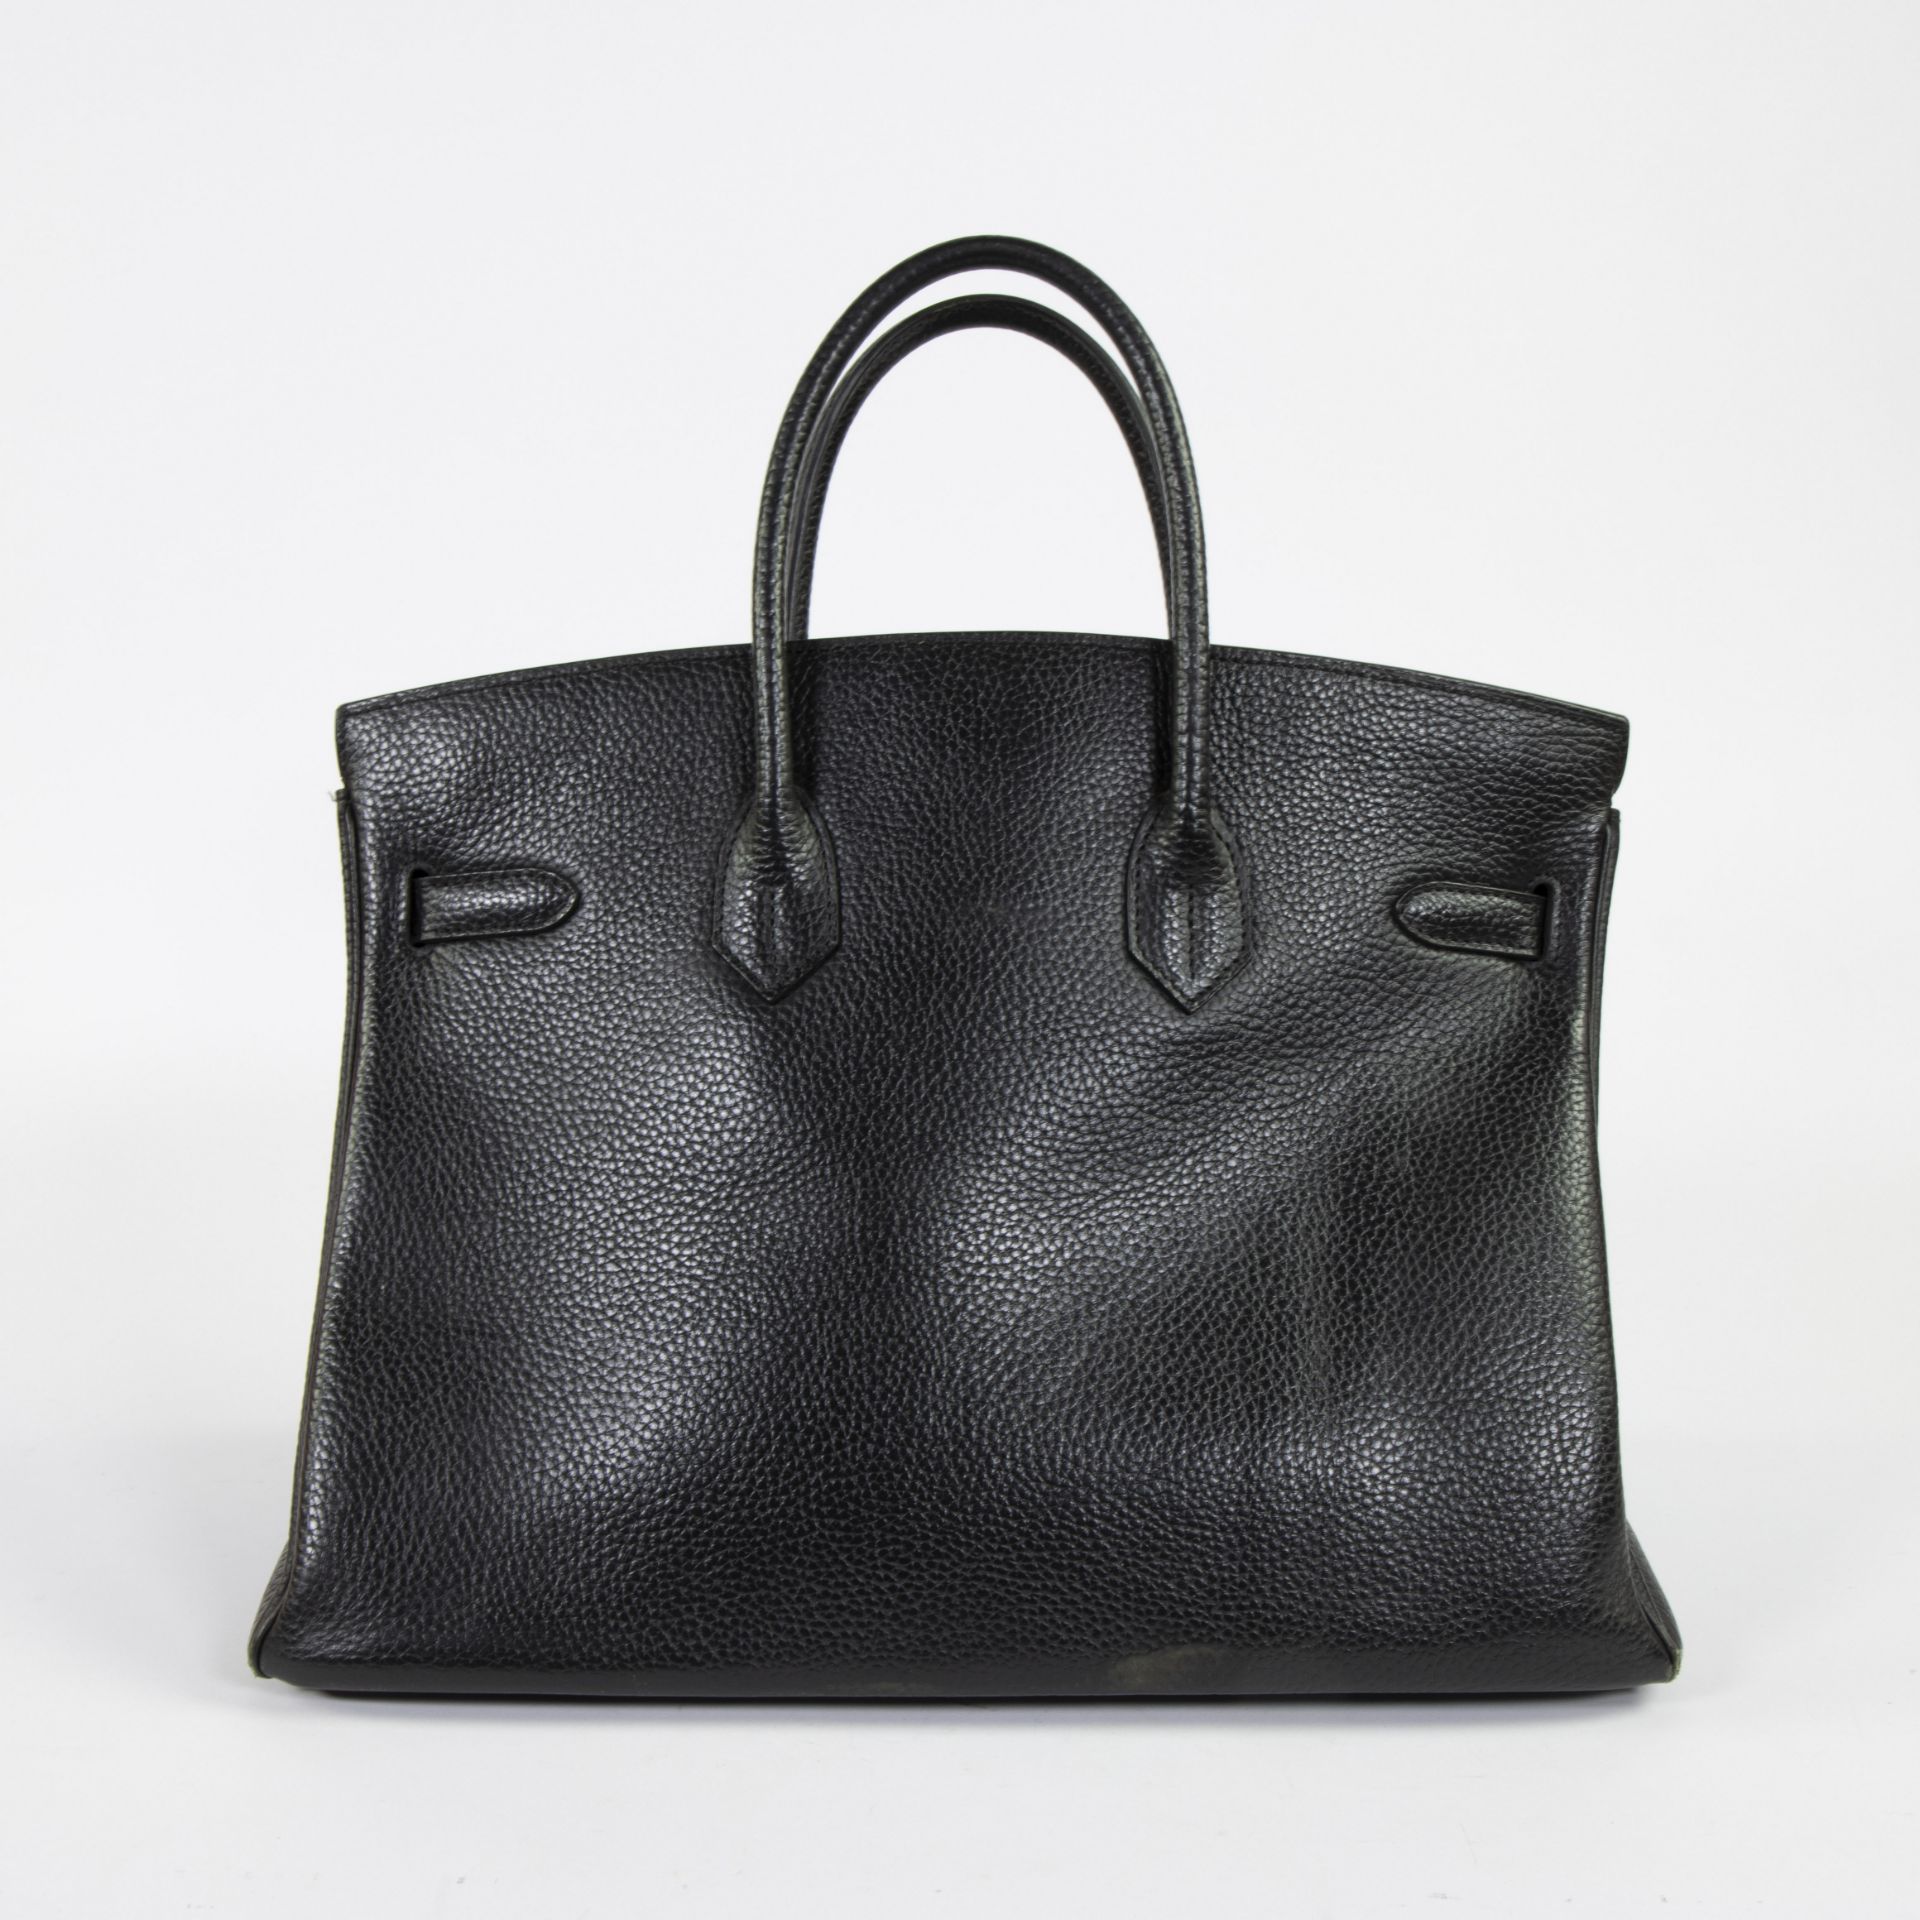 Birkin bag by Hermès Paris - Image 5 of 6